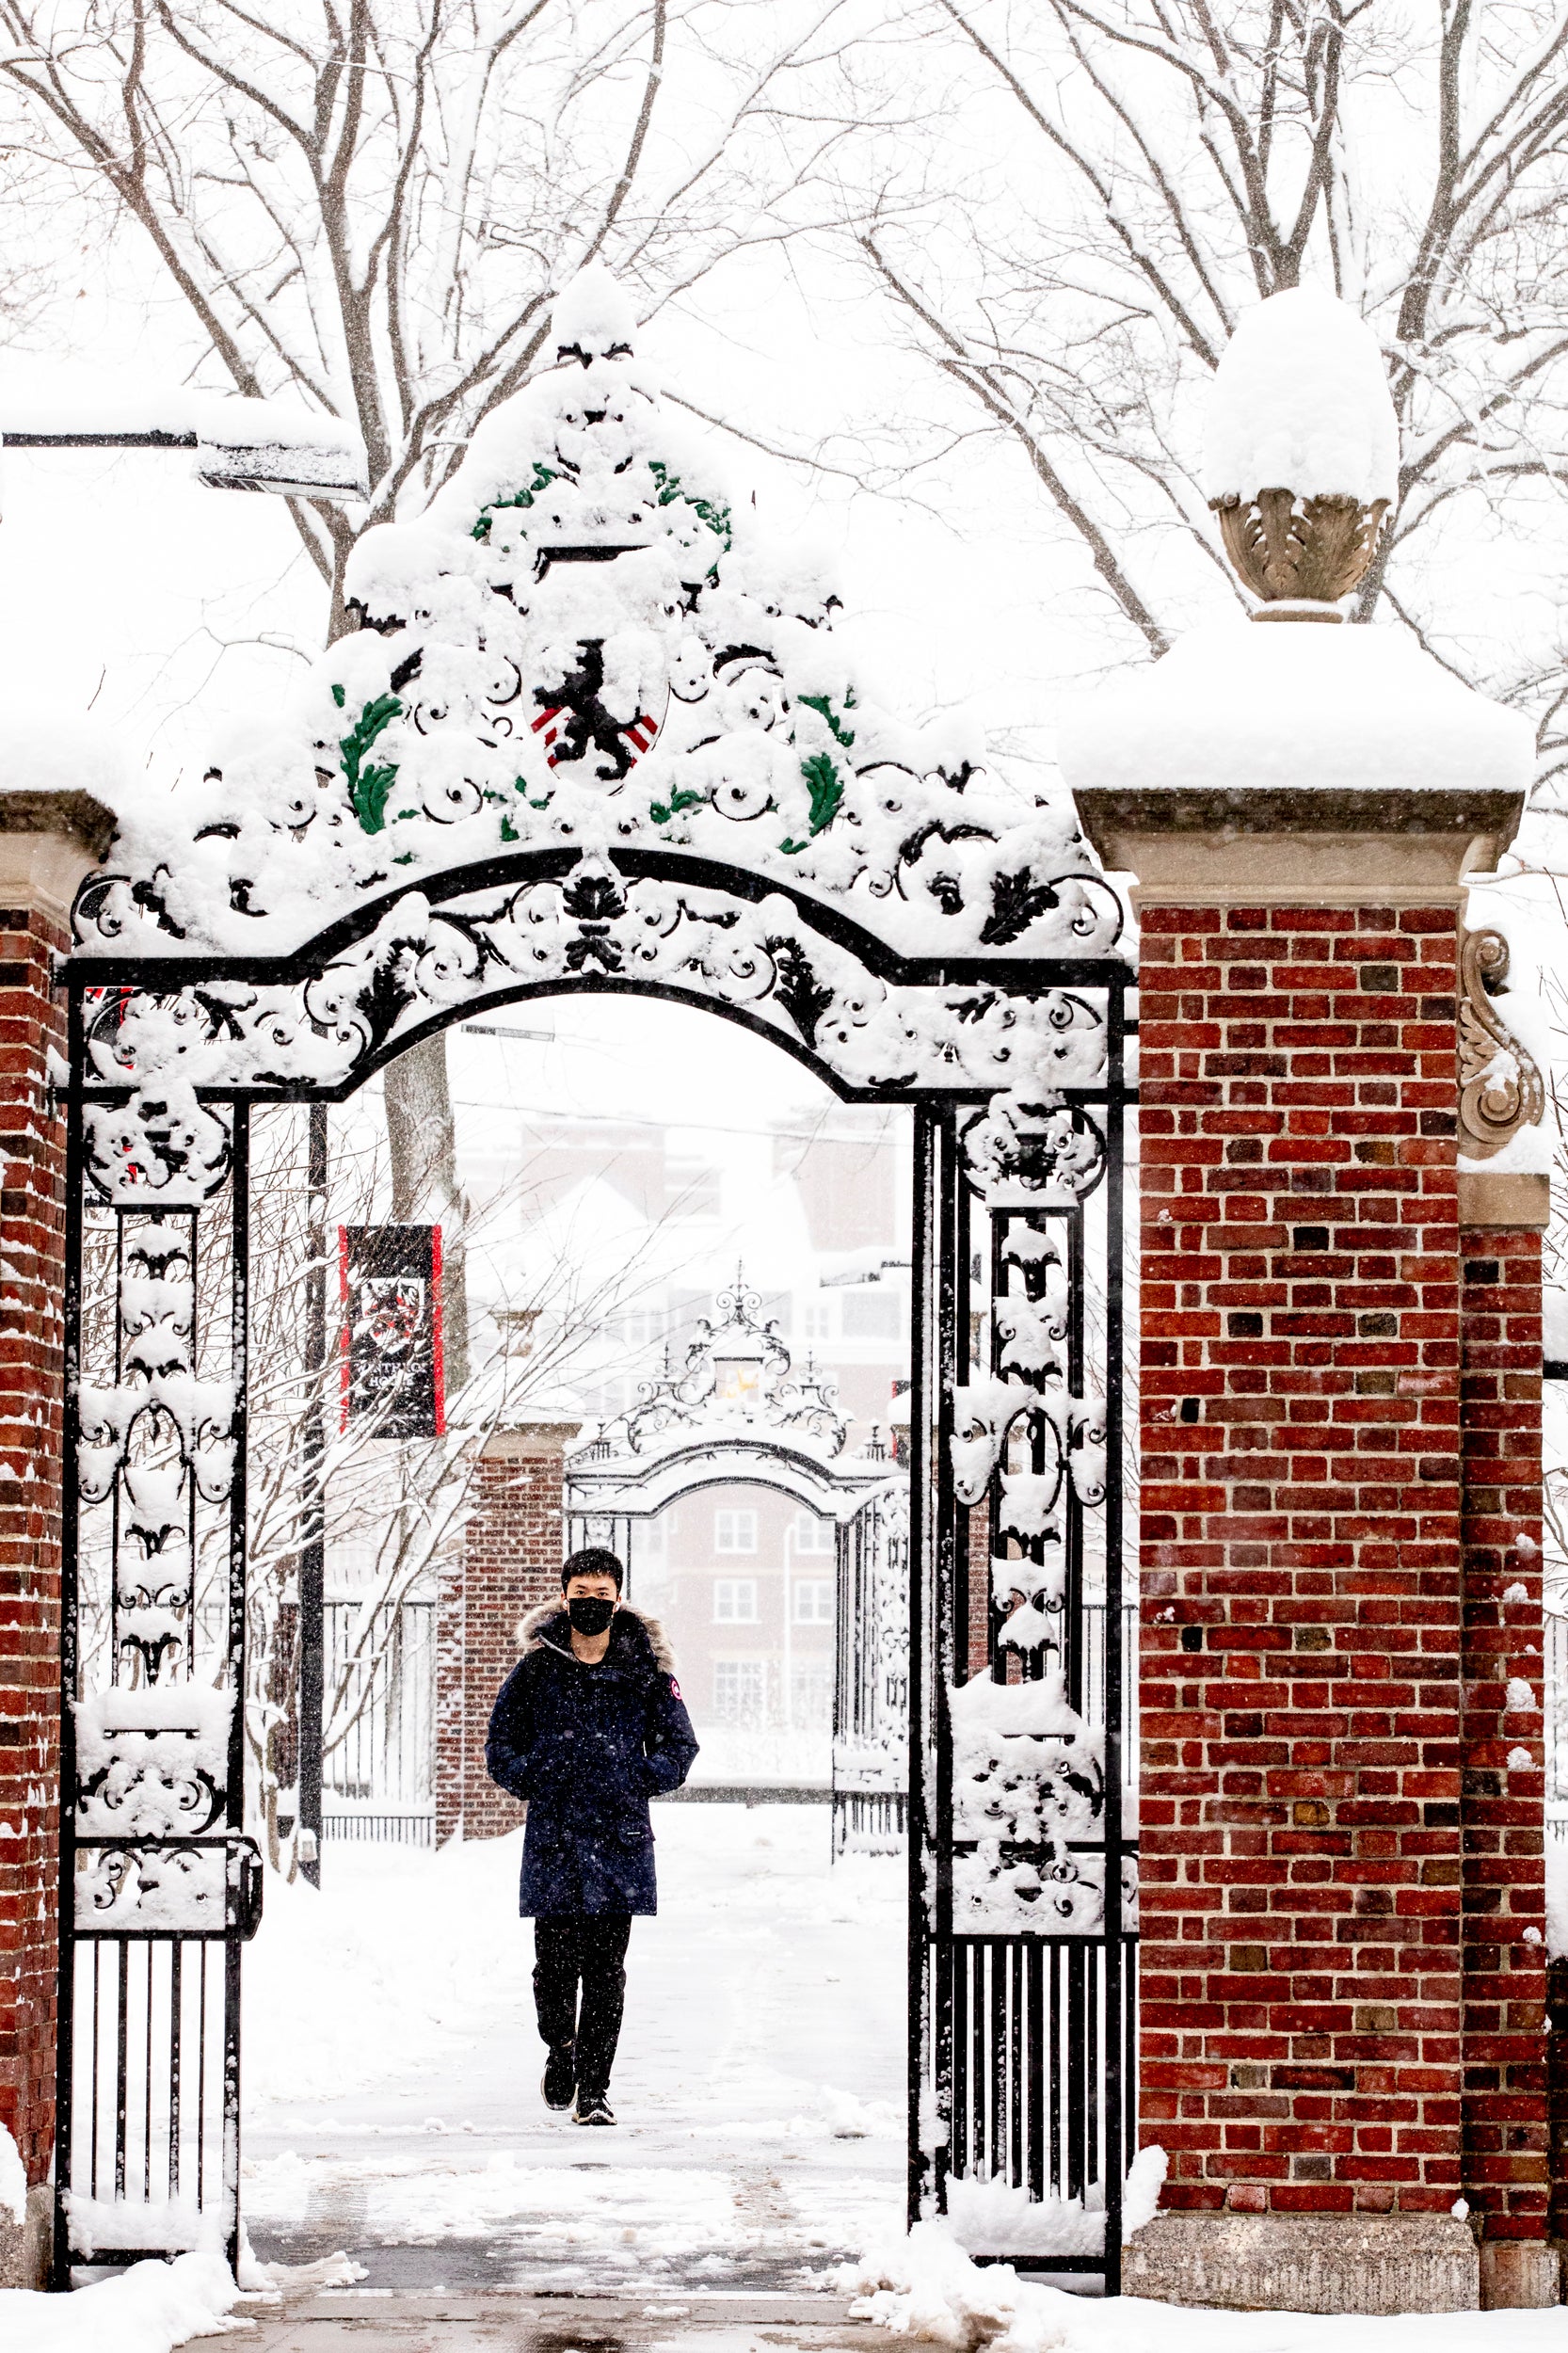 a student wearing winter weather gear walks through an iron gate